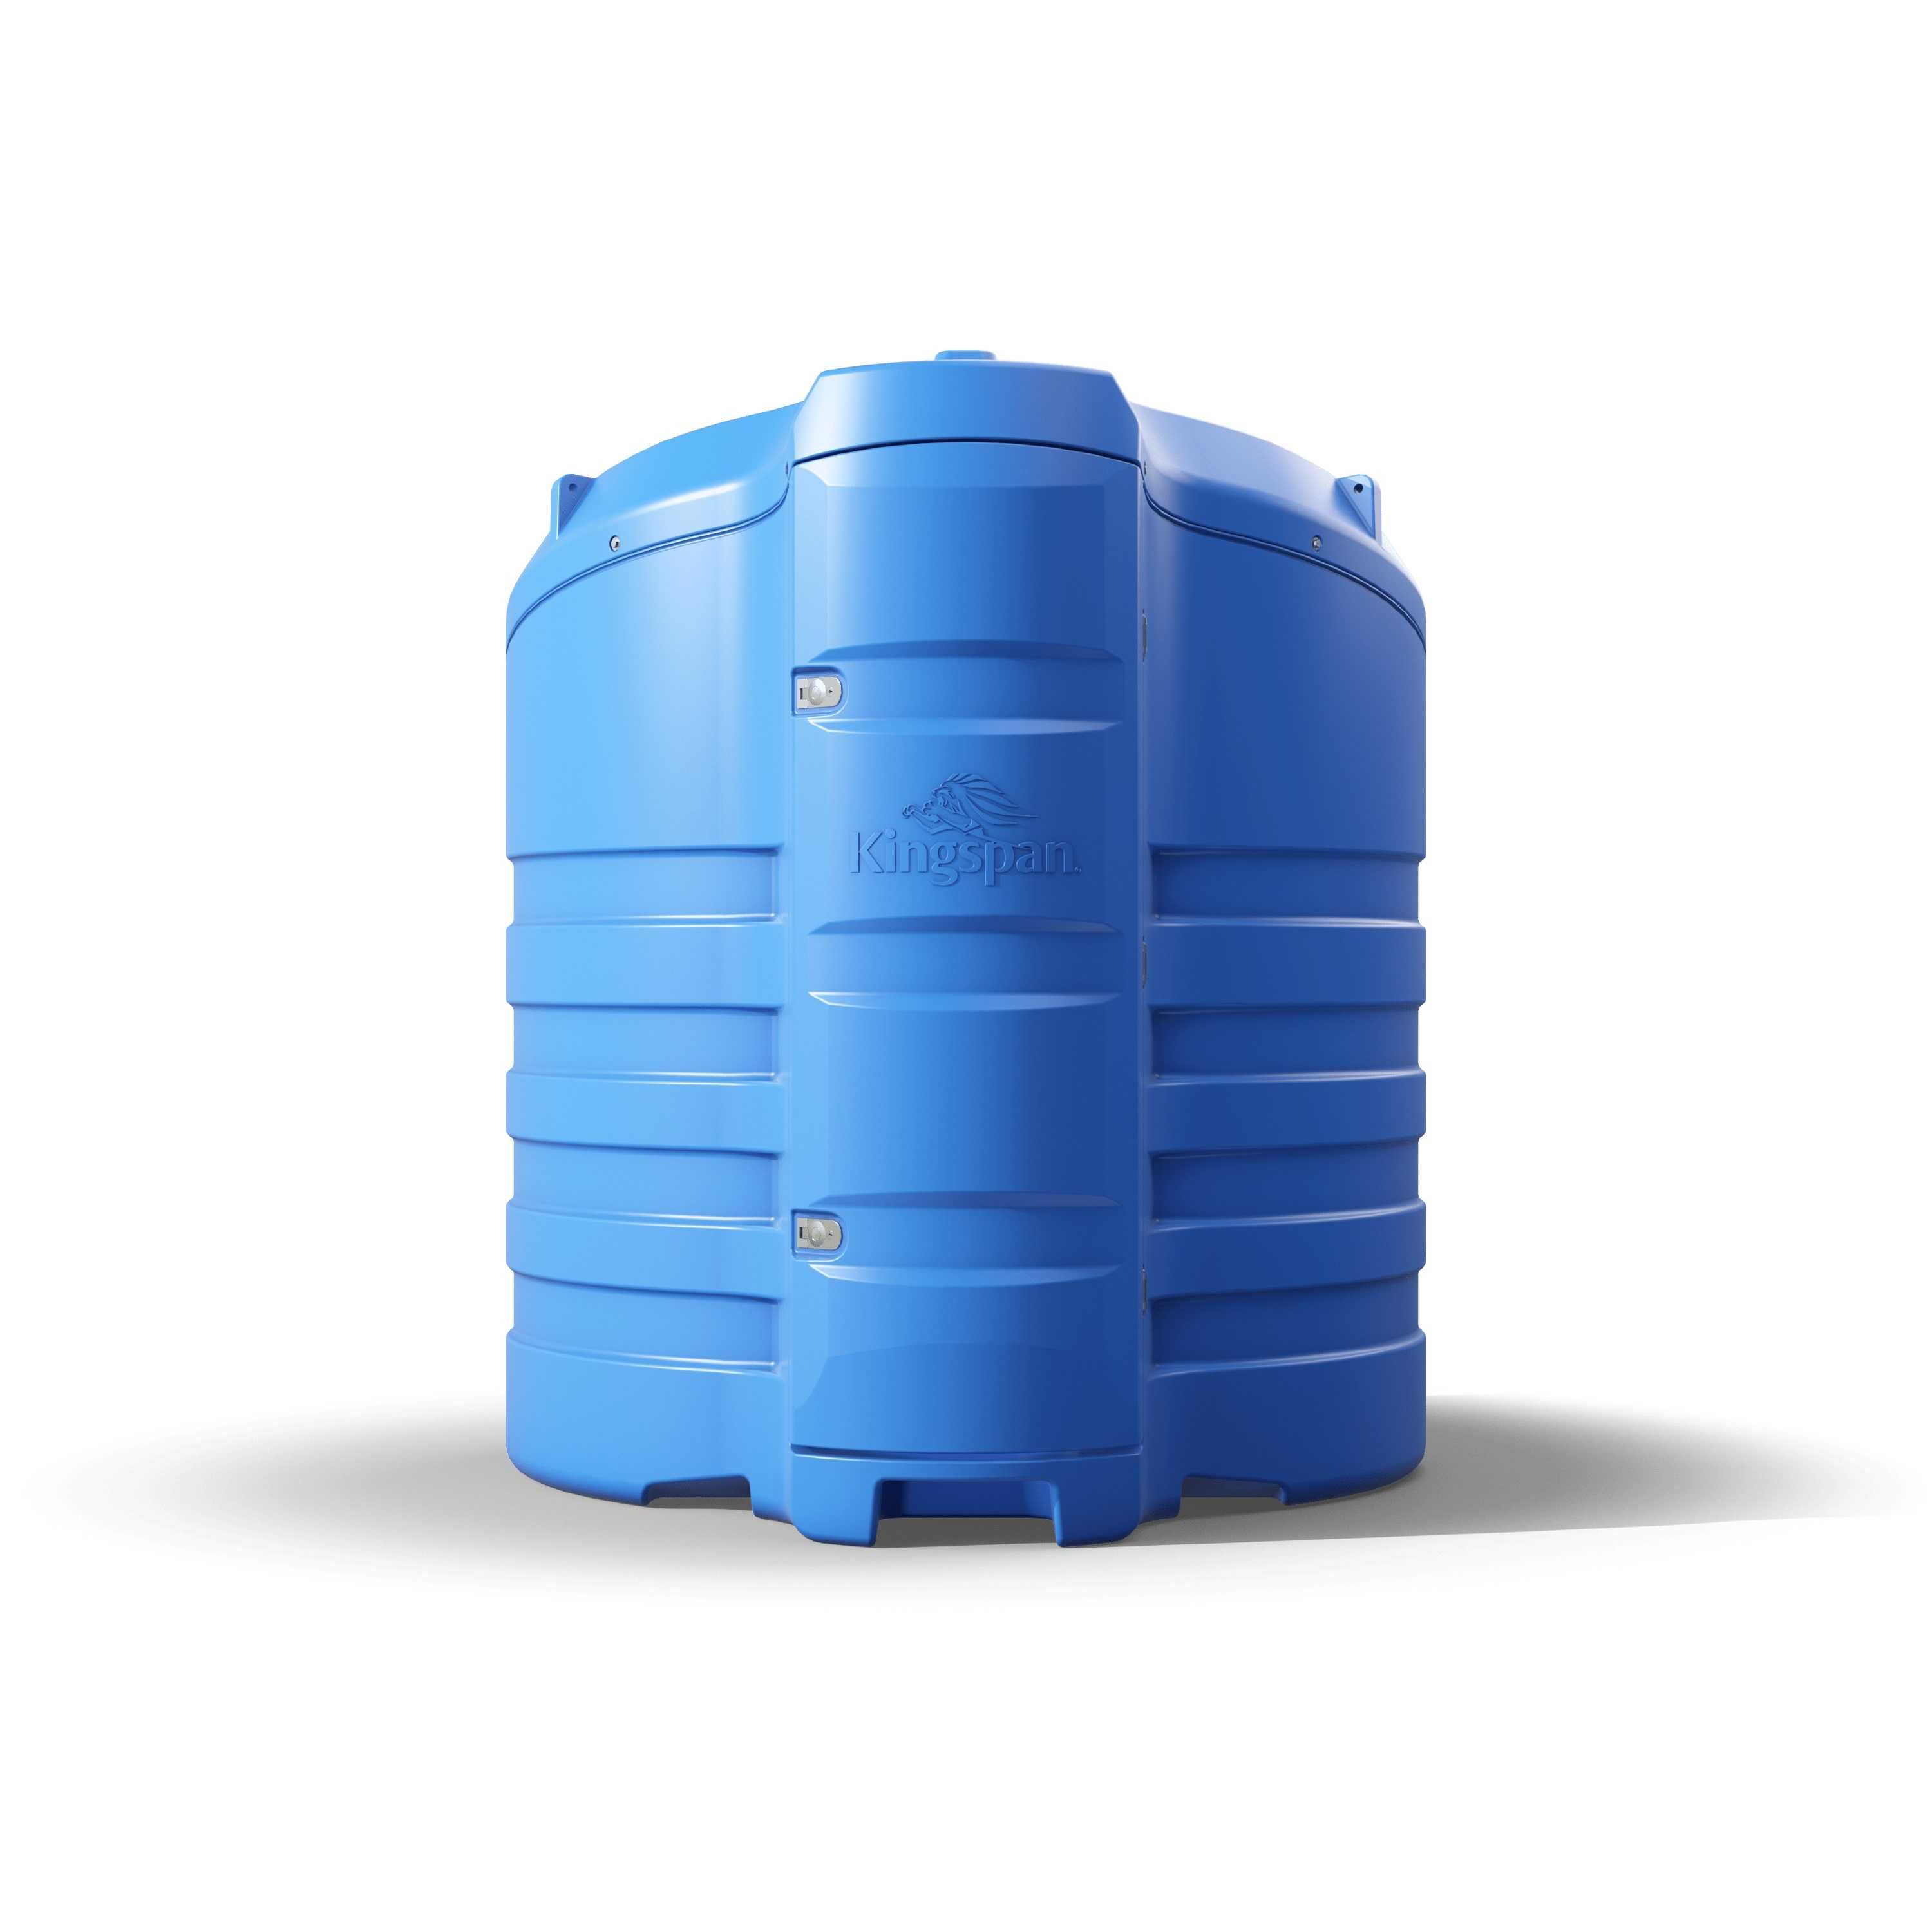 Kingspan Bluemaster® eco – dwupłaszczowy zbiornik do Adblue 2500L